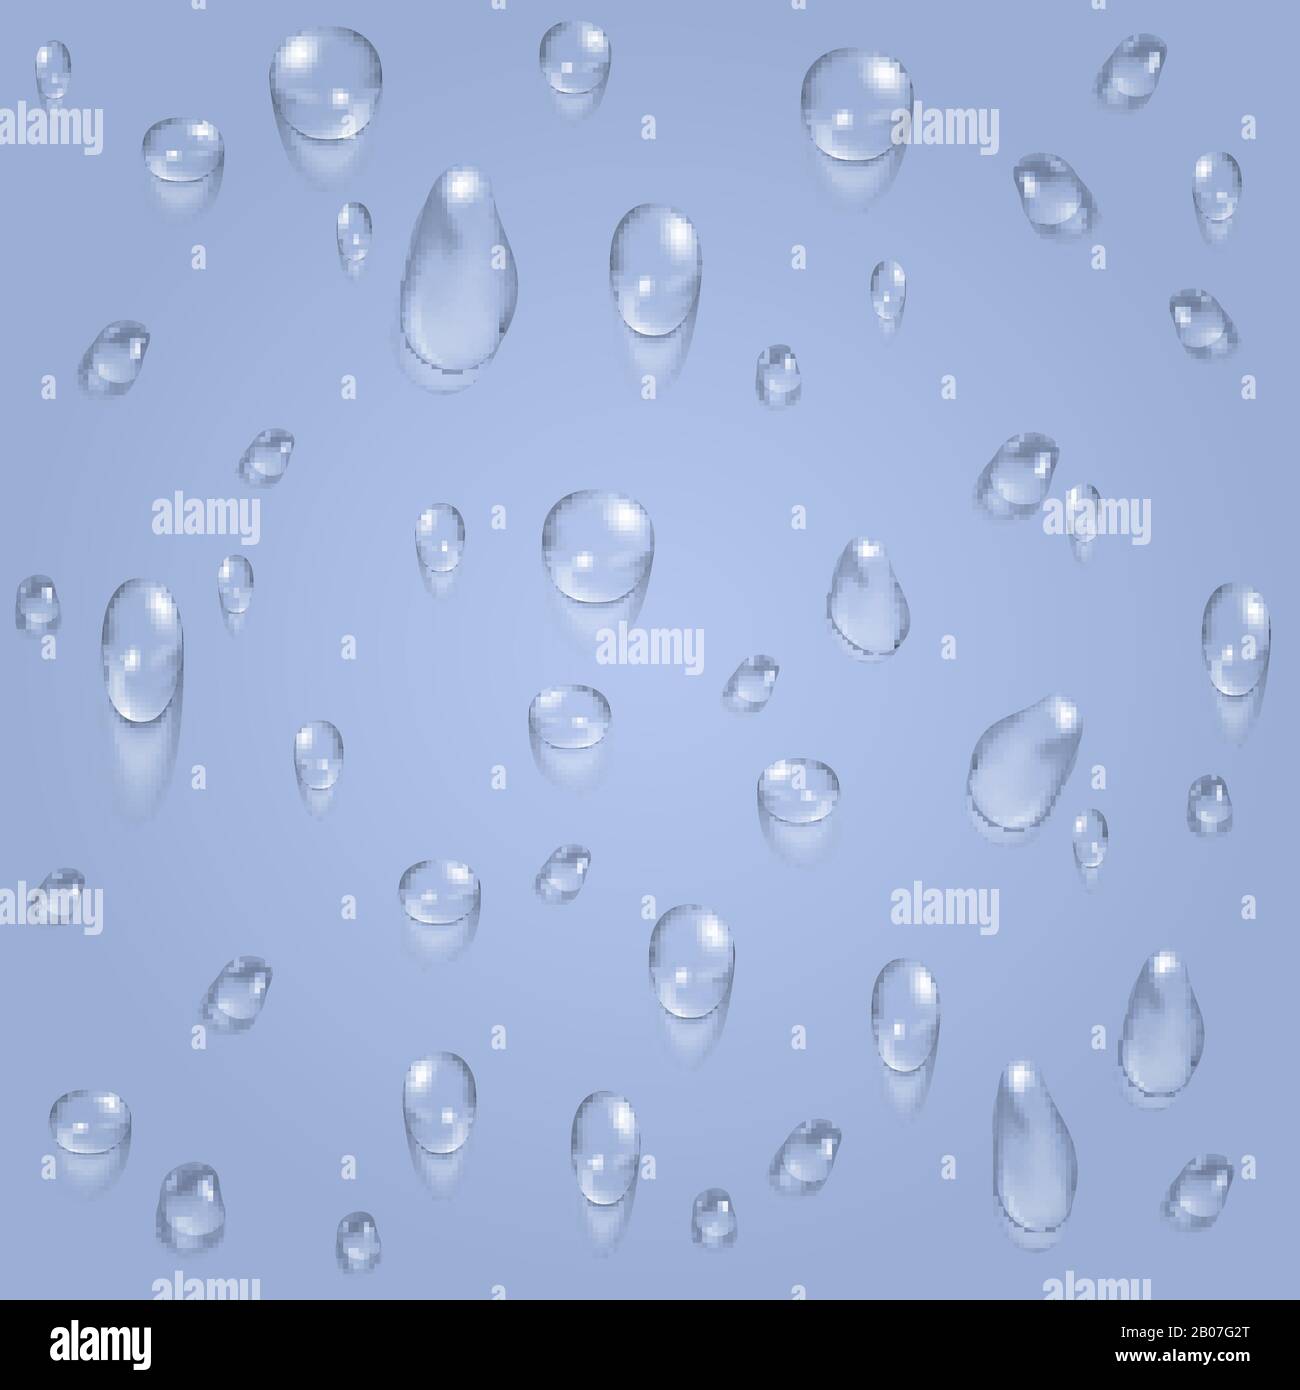 Hellblaues transparentes Wasser lässt den Vektorhintergrund fallen. Abbildung: Regen und Tau Stock Vektor